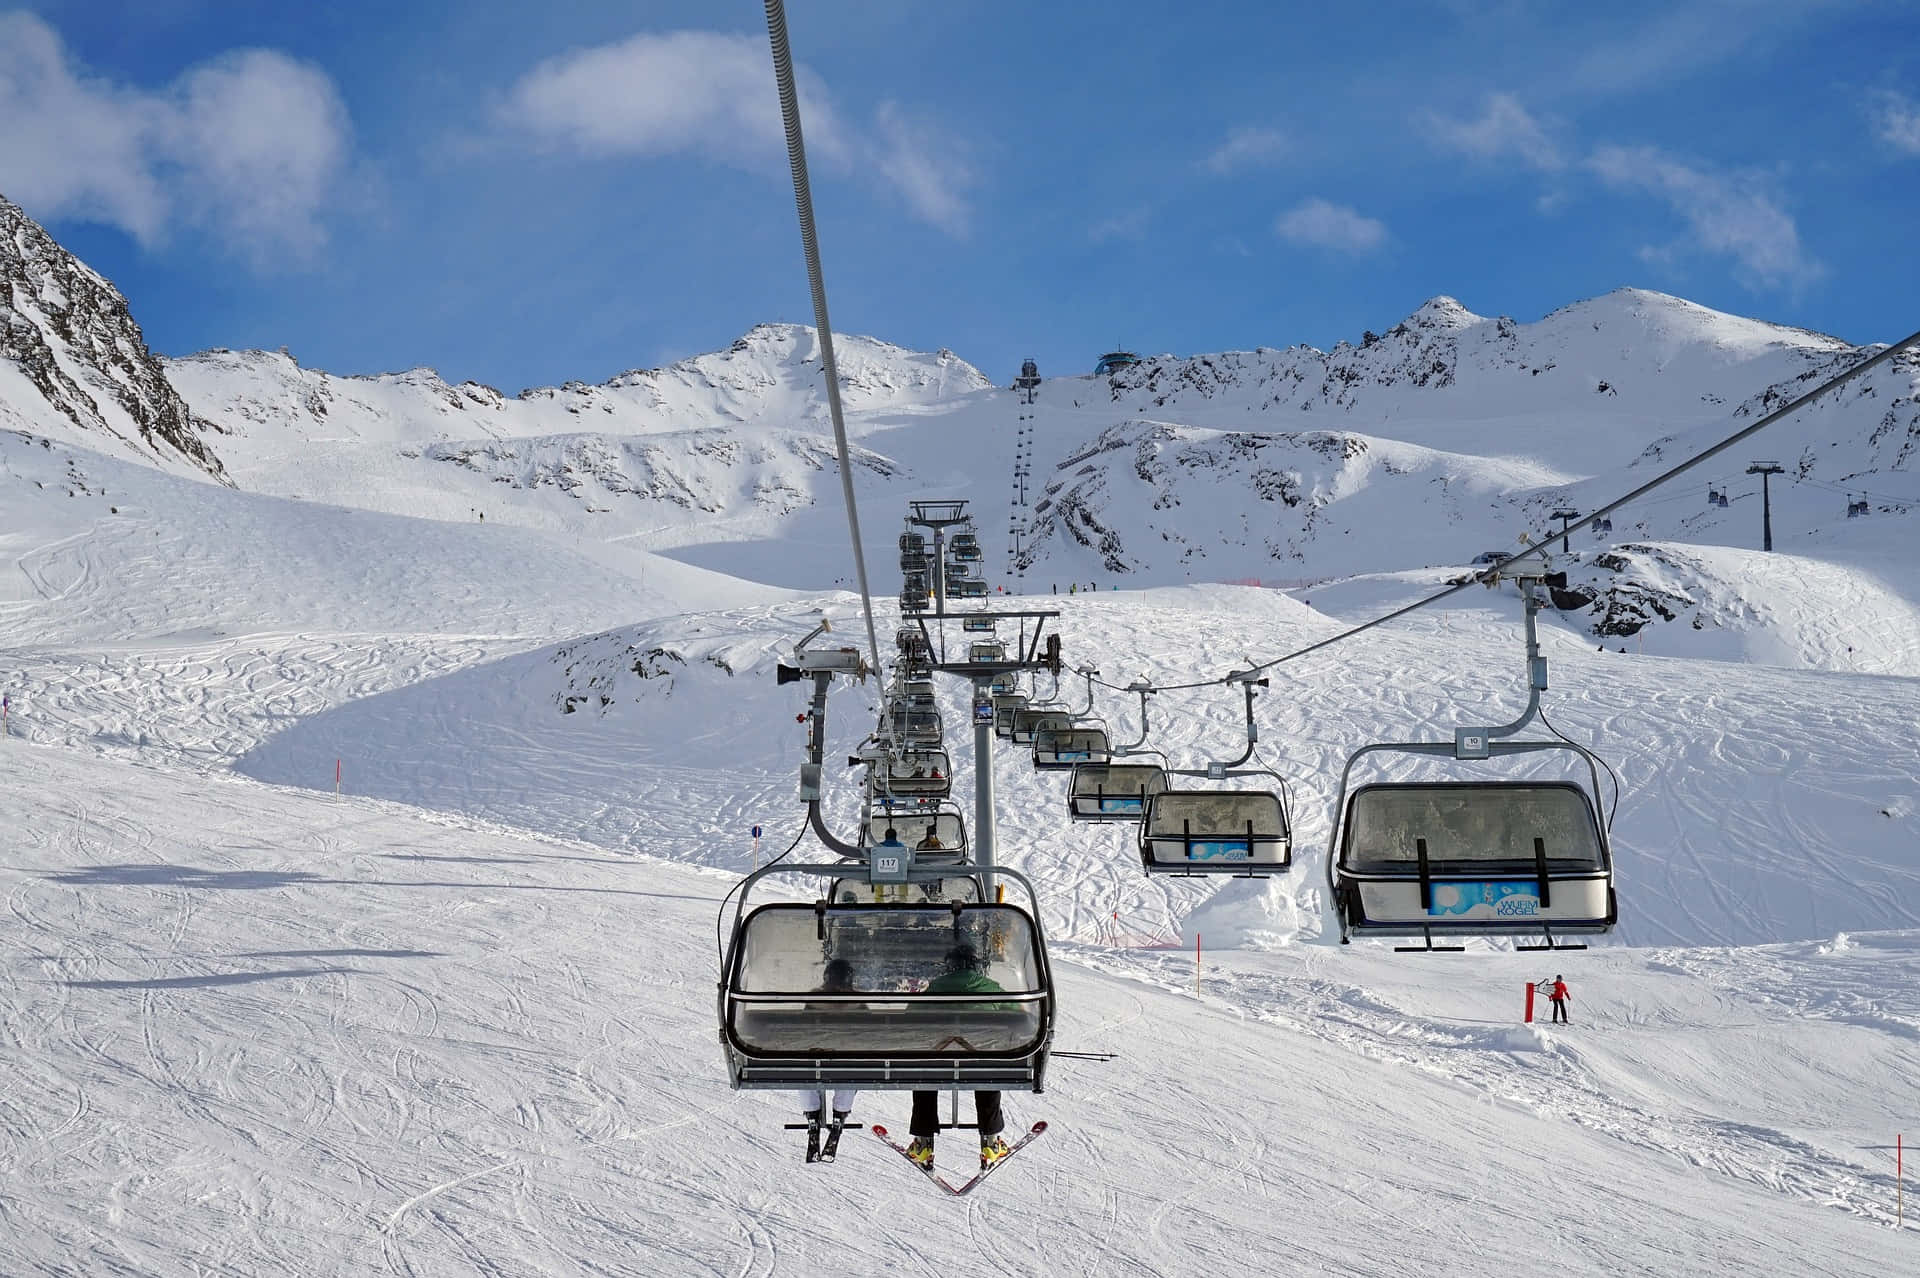 Breathtaking Scenery of a Ski Resort in Winter Wallpaper